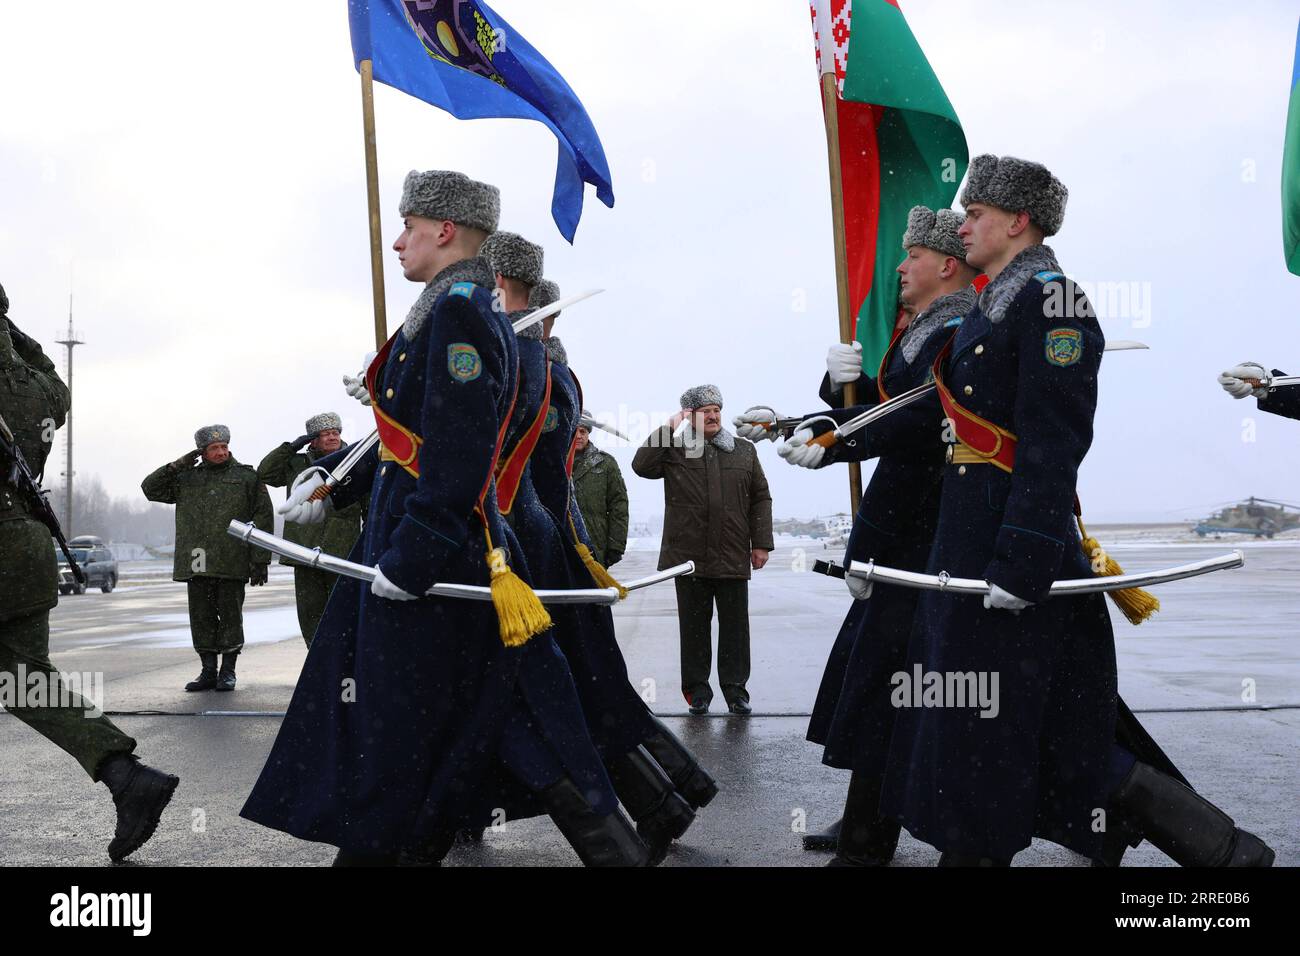 220116 -- MINSK, le 16 janvier 2022 -- le président biélorusse Alexander Loukachenko C inspecte les militaires biélorusses sur un aérodrome militaire à Minsk, en Biélorussie, le 15 janvier 2022. Loukachenko a salué samedi le rôle des forces de maintien de la paix de l'OTSC de l'Organisation du Traité de sécurité collective tout en saluant les militaires biélorusses participant à l'opération au Kazakhstan sur un aérodrome militaire. BIÉLORUSSIE-MINSK-PRESIDENT-CSTO Xinhua PUBLICATIONxNOTxINxCHN Banque D'Images